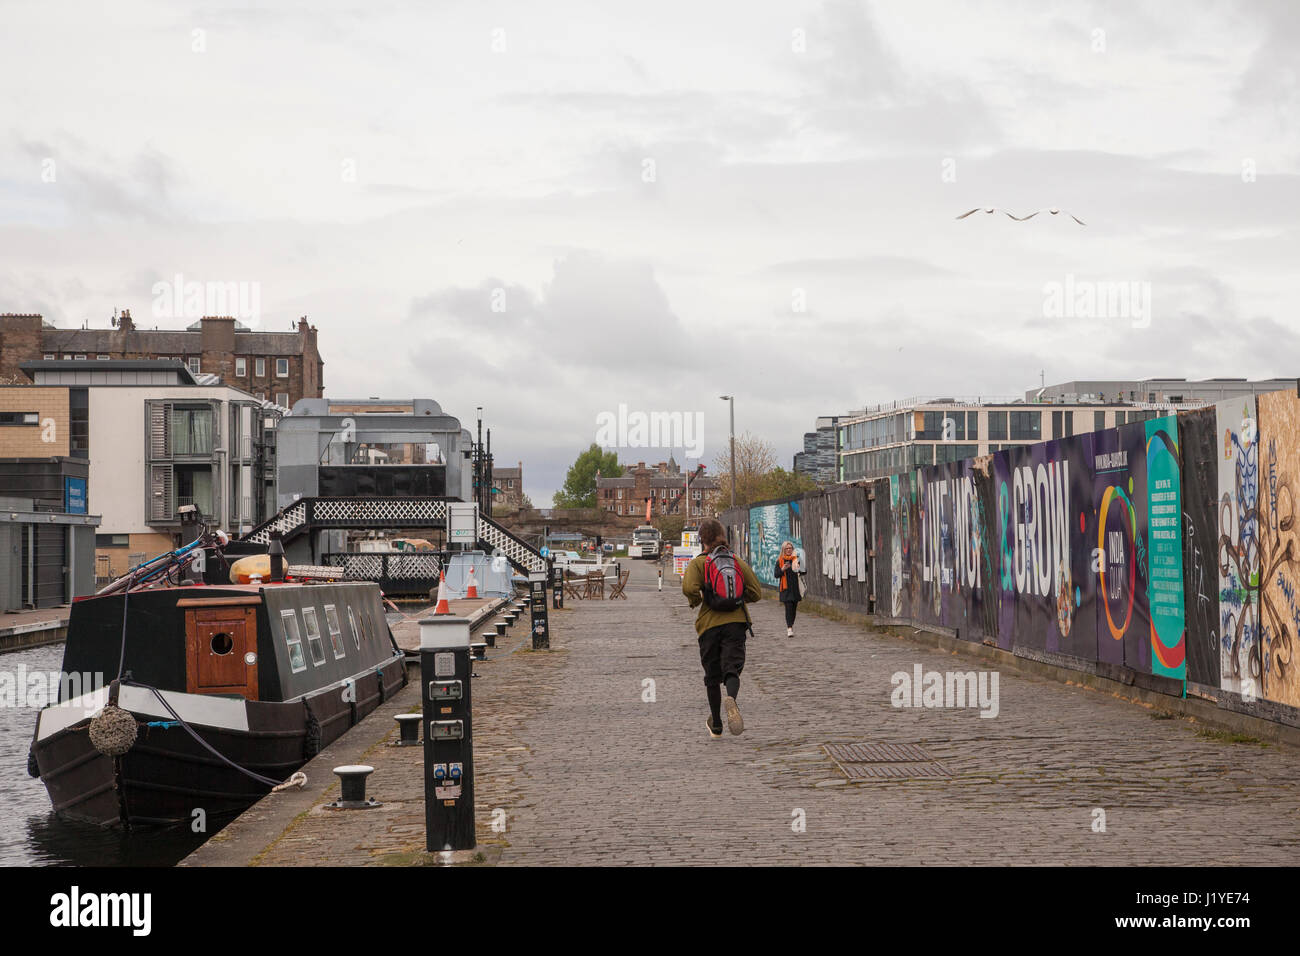 Homme qui court à côté de Union canal près de croix sans frais à Édimbourg, Écosse, Royaume-Uni, Angleterre. Météo : temps couvert avec éclaircies Banque D'Images